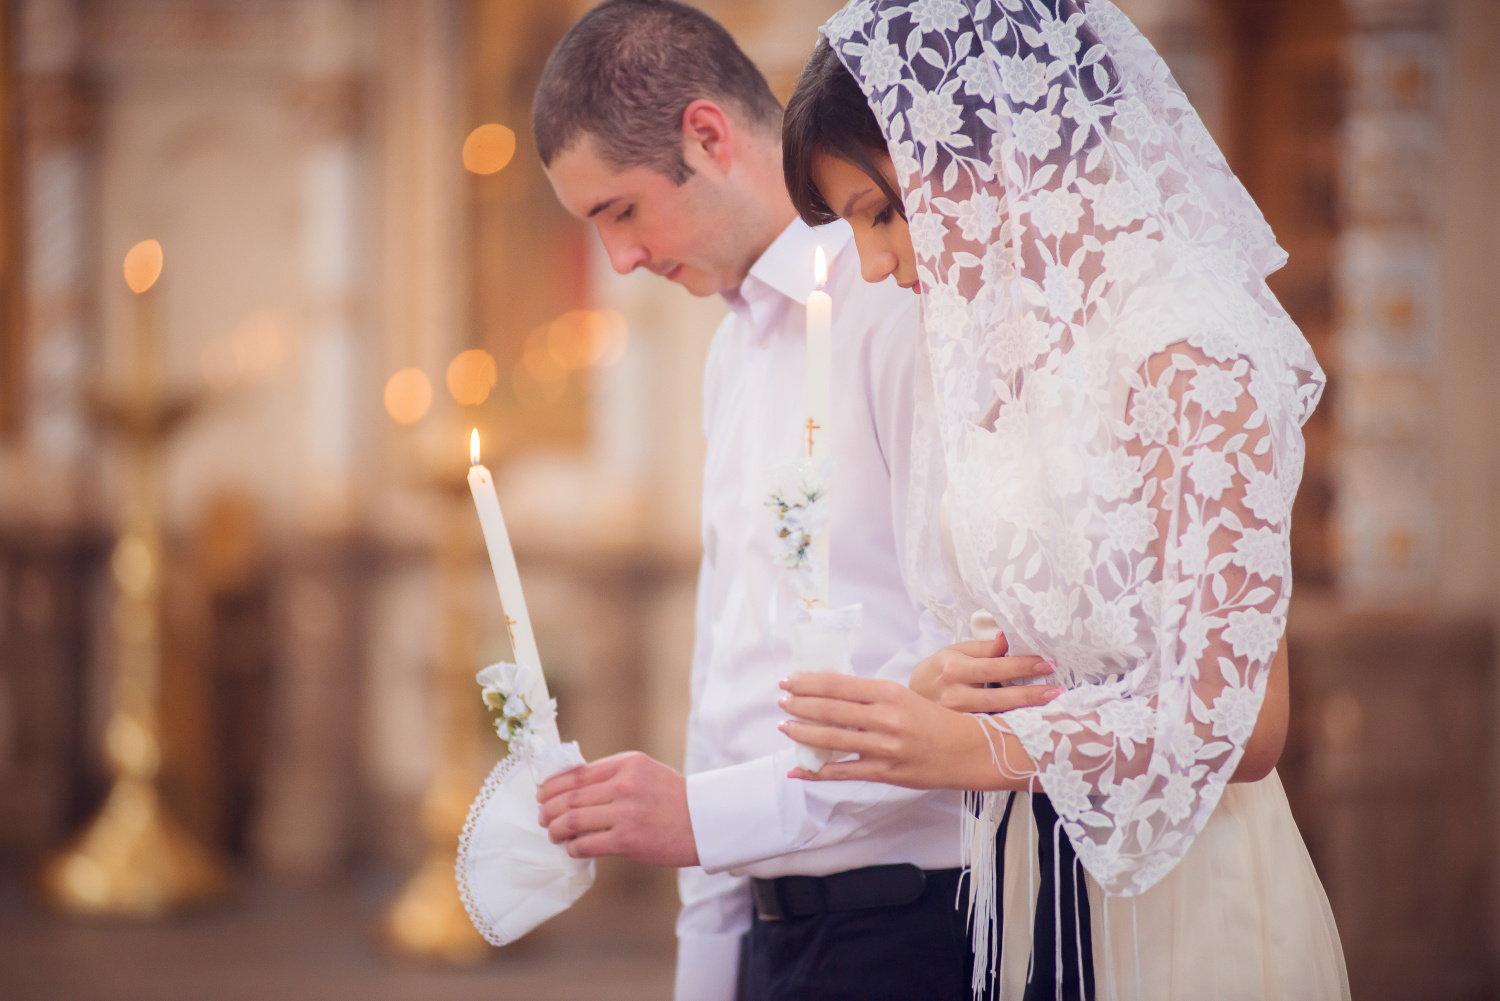 Венчание через несколько лет после свадьбы: особенности, подготовка, правила, можно ли обвенчаться после нескольких лет брака?